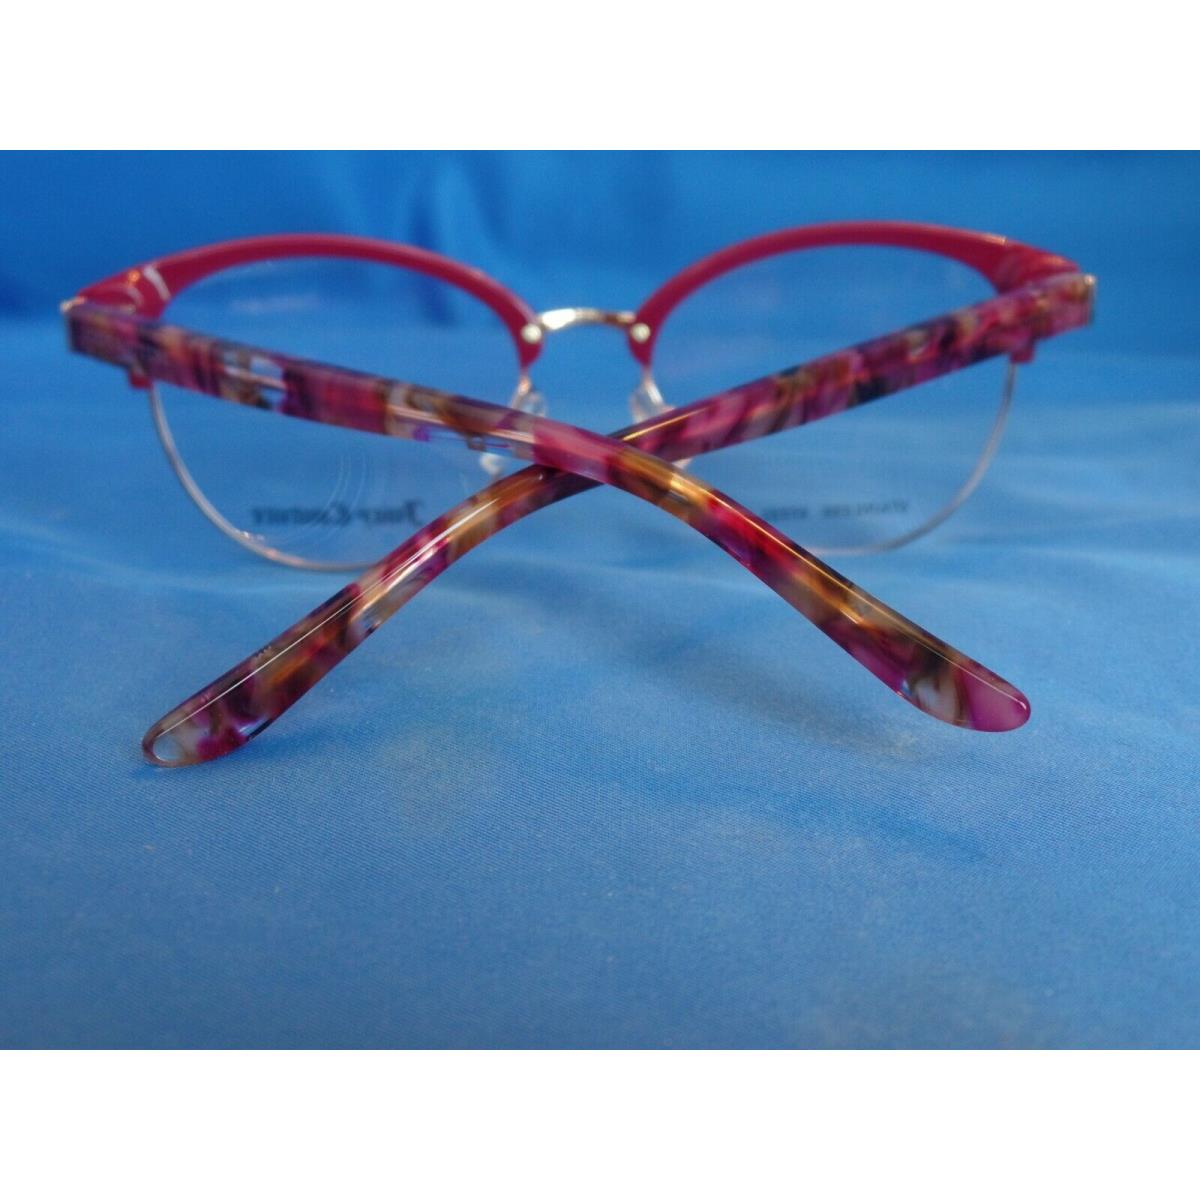 Juicy Couture eyeglasses  - Burgundy Opal , Burgundy Opal Frame 5